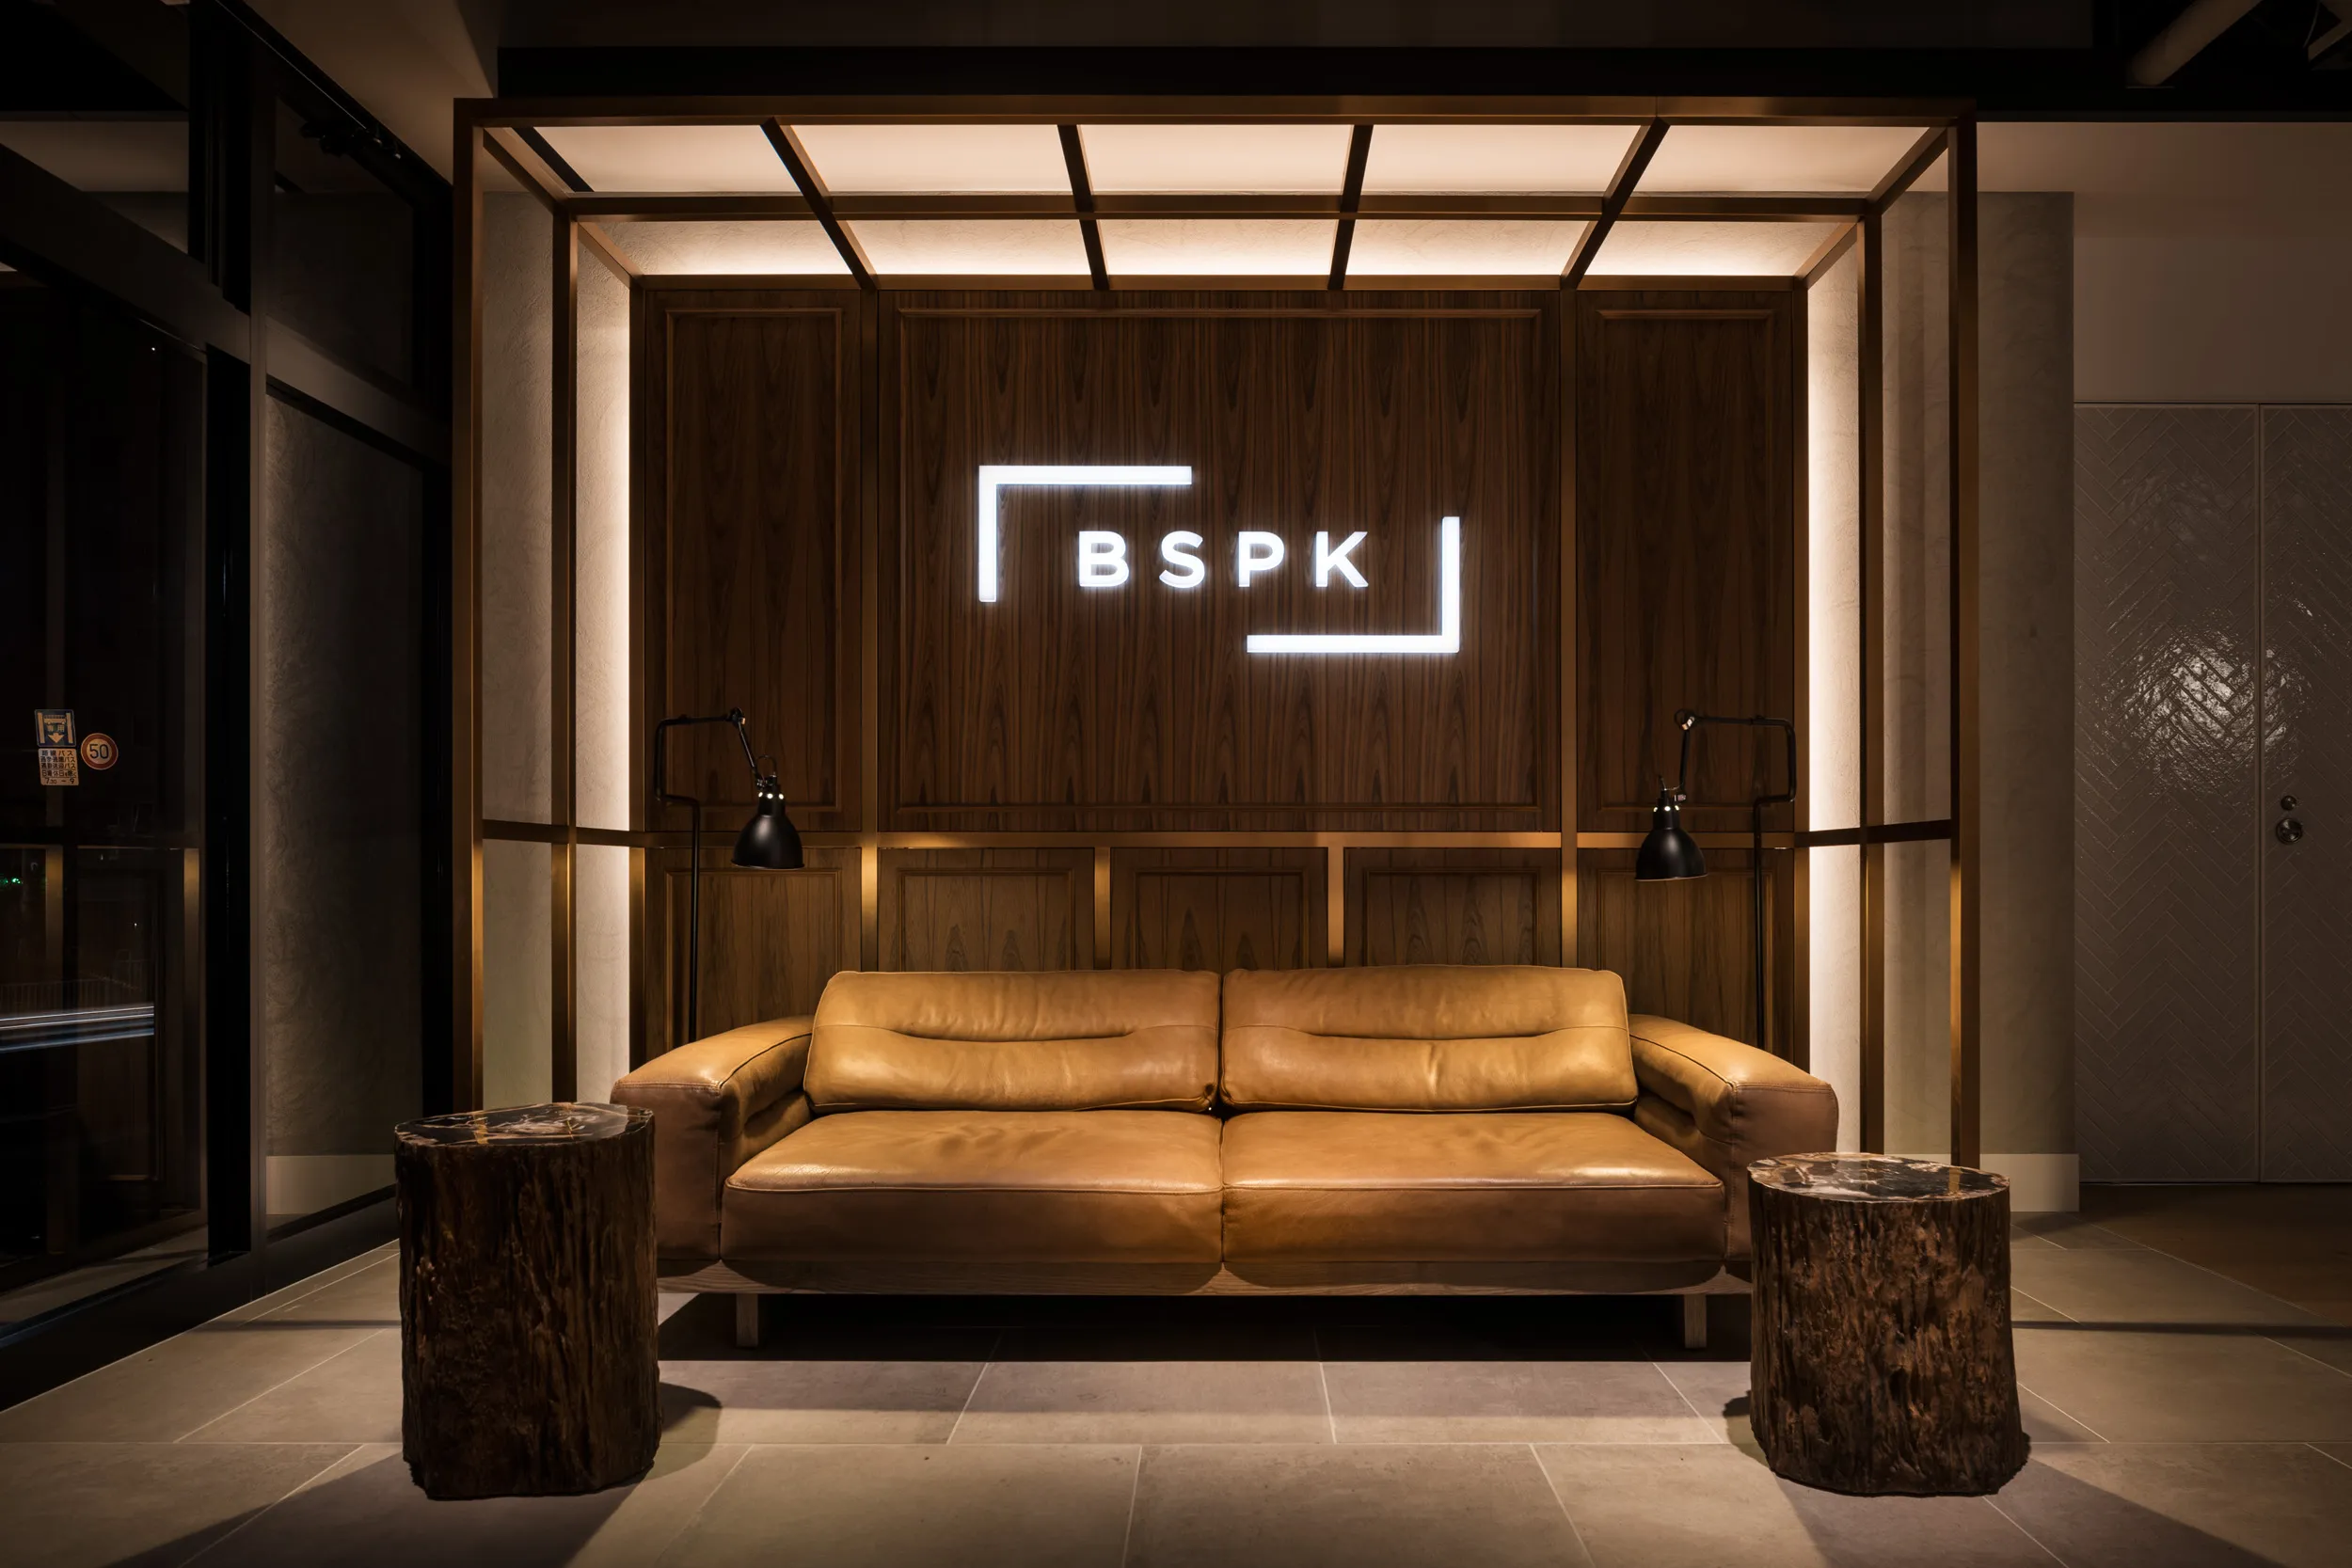 BSPK / bespoke hotels